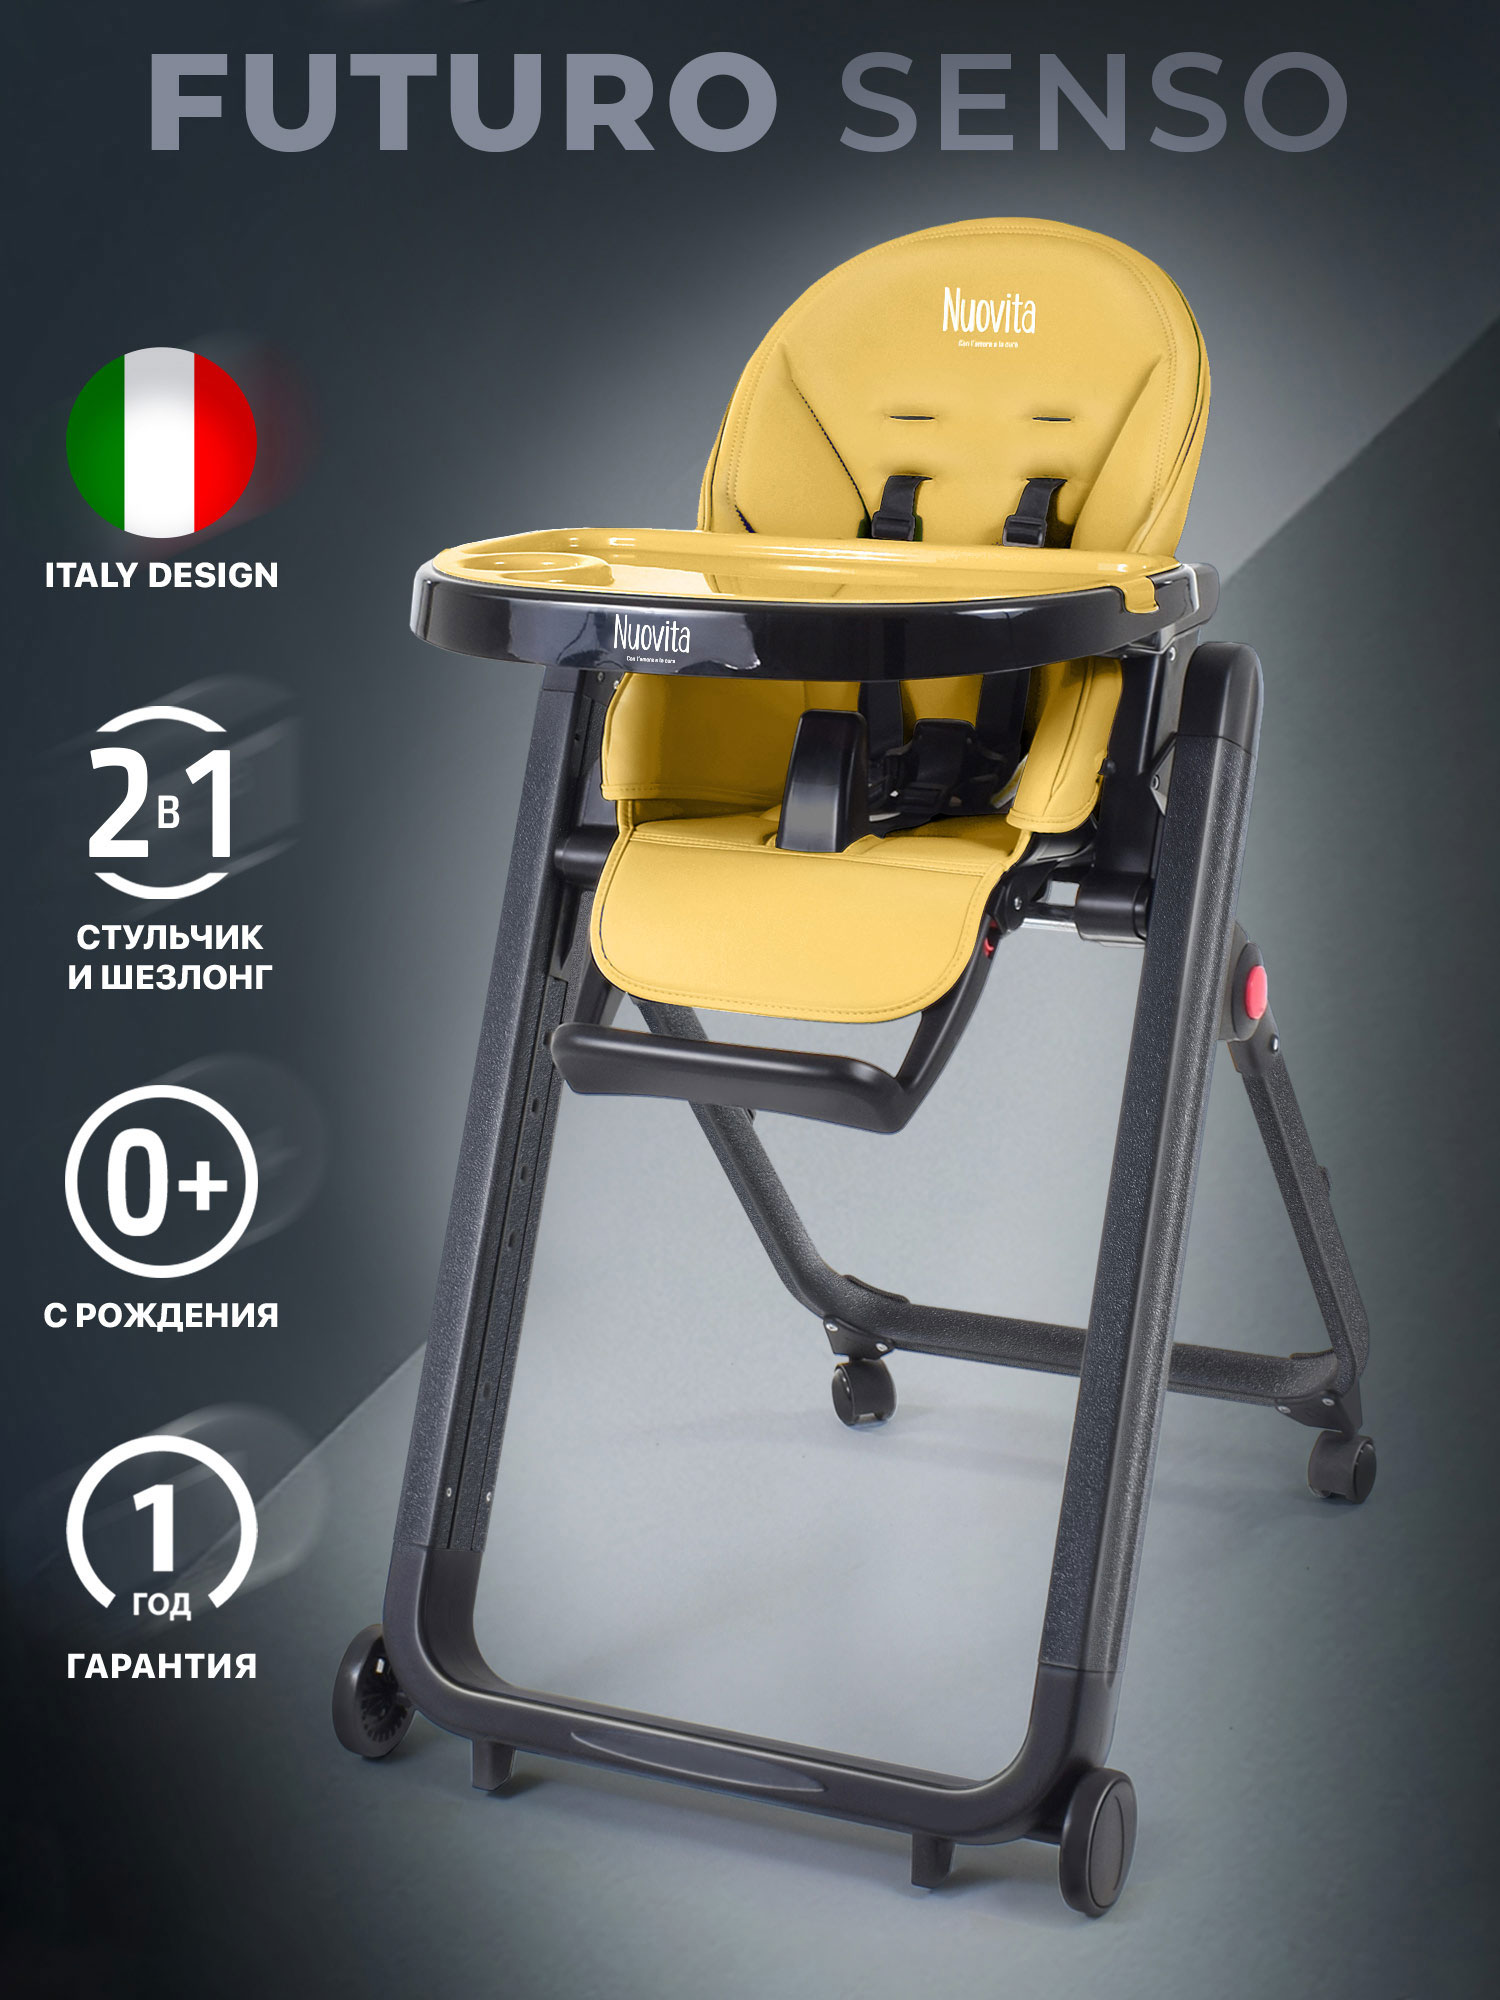 Стульчик для кормления Nuovita Futuro Senso Nero (Giallo/Желтый) стульчик для кормления nuovita futuro senso nero marino морской